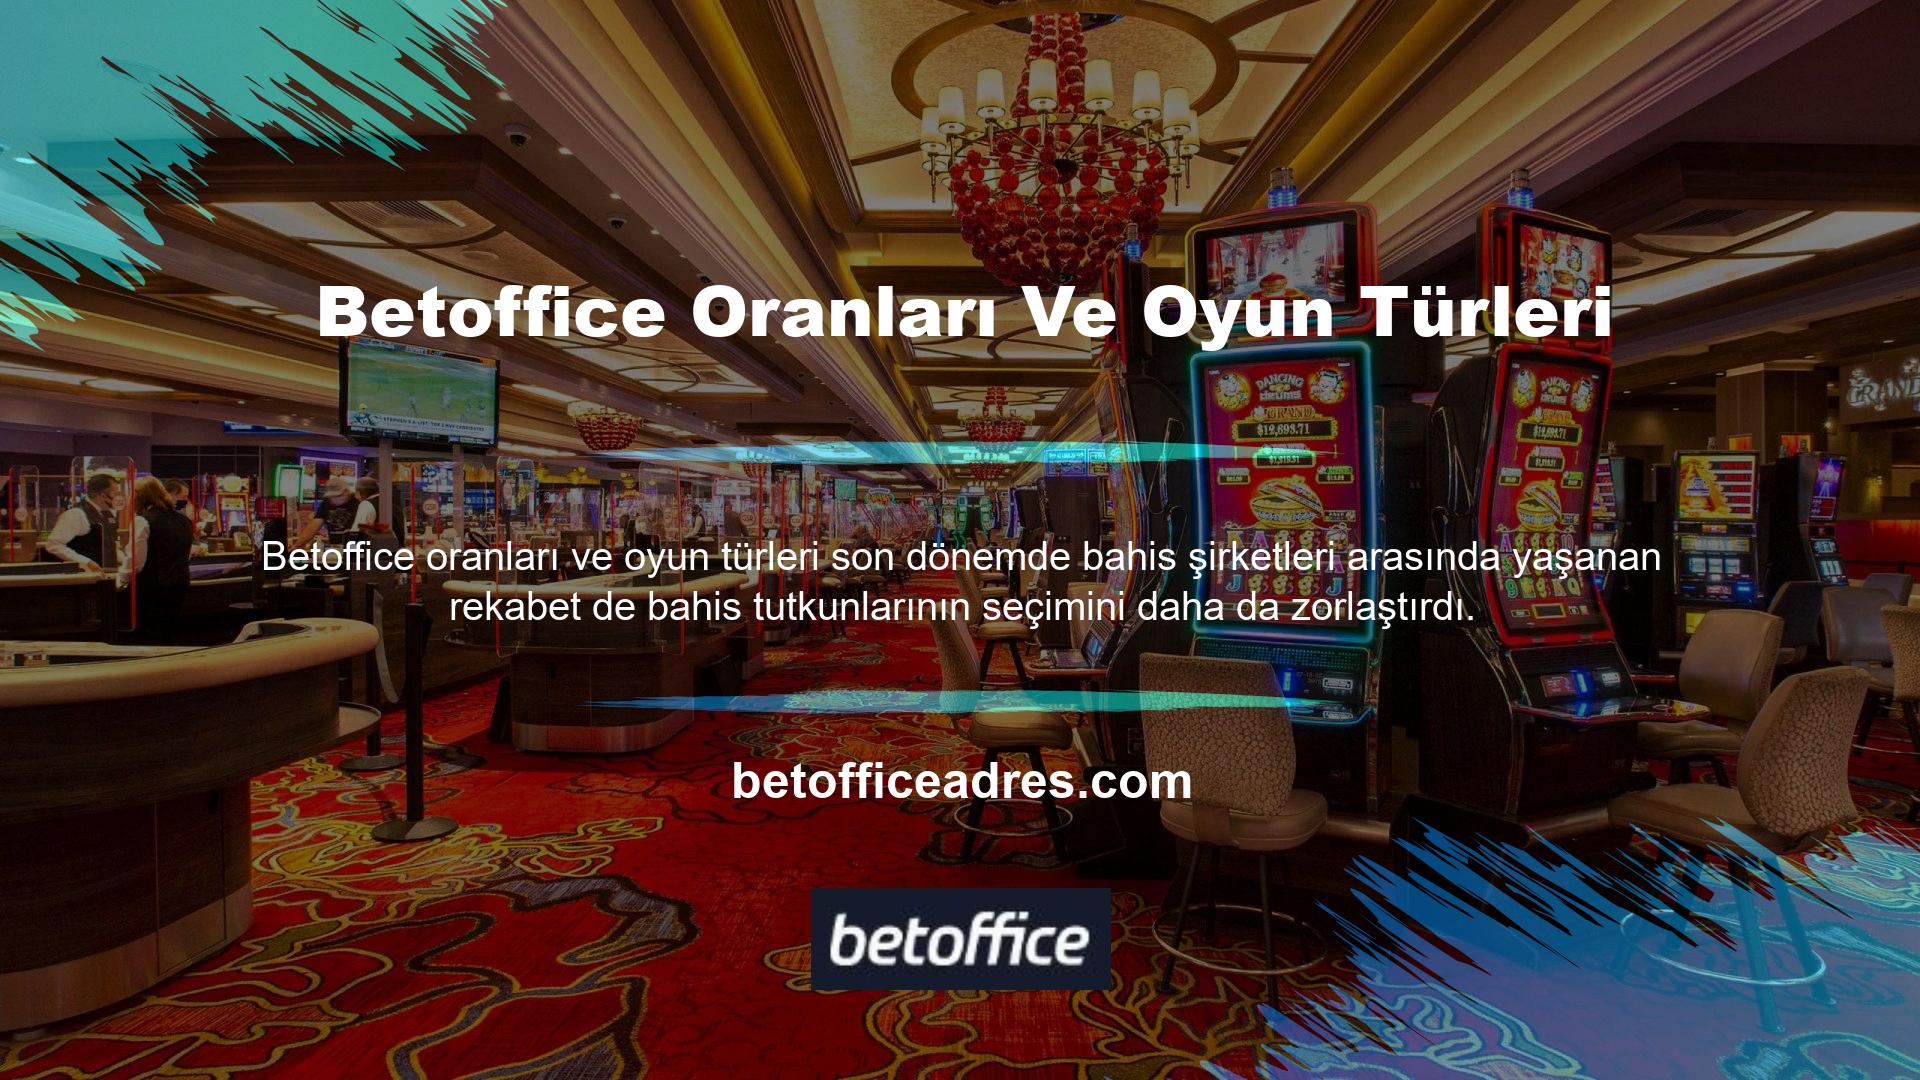 Betoffice ülkemizde faaliyet göstermektedir ve Betoffice oranlarını ve oyun türlerini bahis meraklılarına sunan Türk şirketleri gibi diğer bahis siteleri arasında tercih edilmektedir